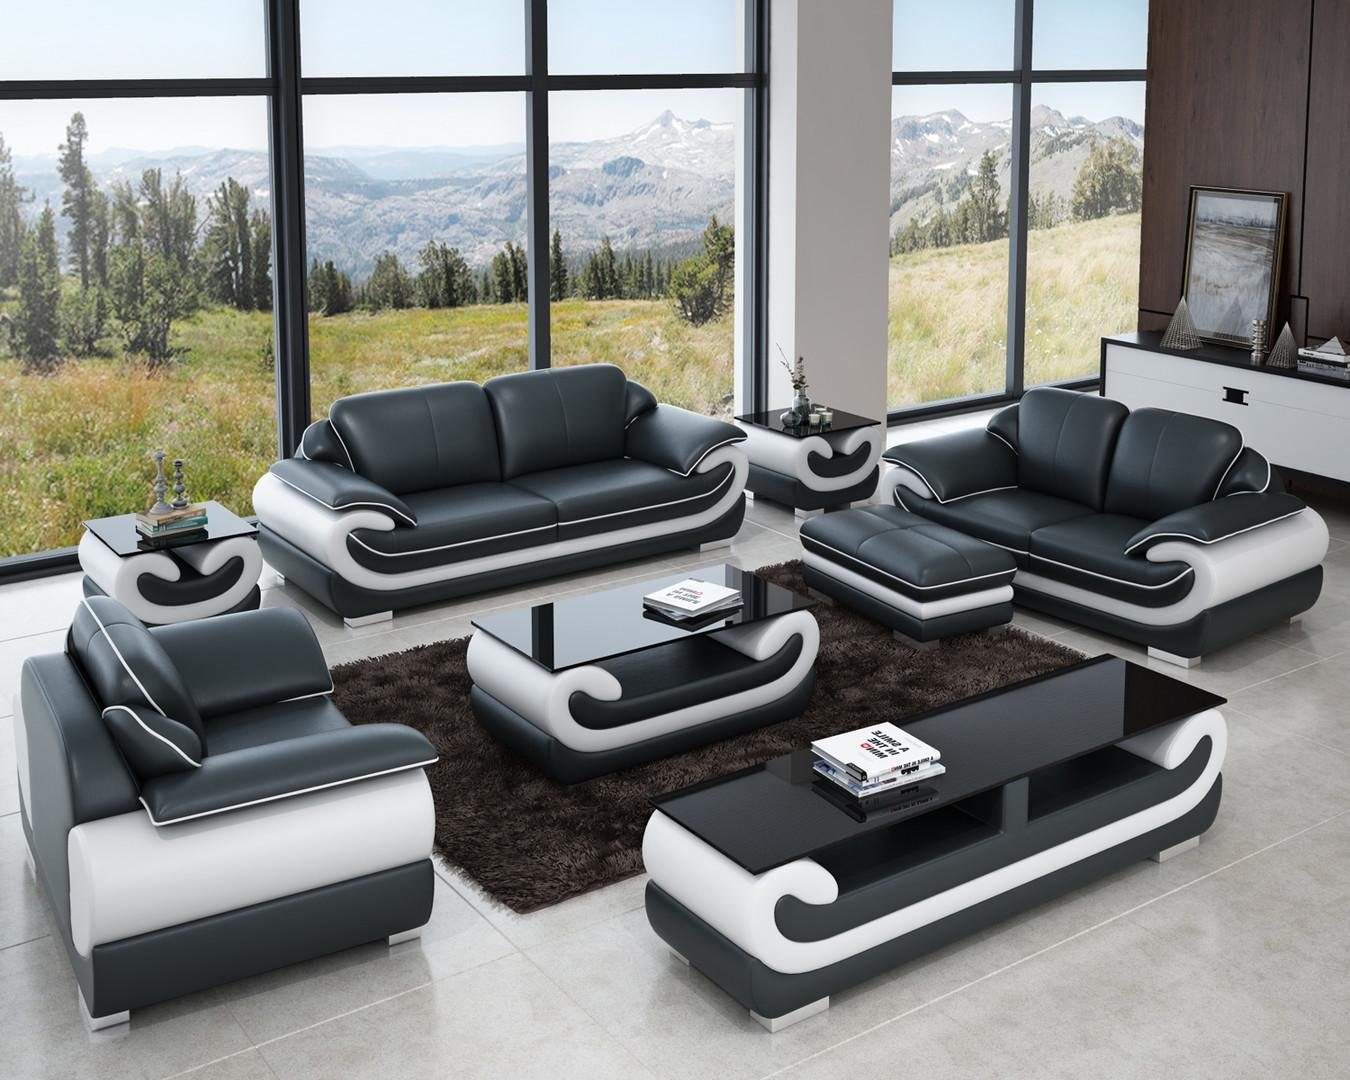 JVmoebel Sofa Sofas 3+2+1 Sitzer Set Design Sofas Polster Couchen Leder Relax, Made in Europe Grau/Weiß